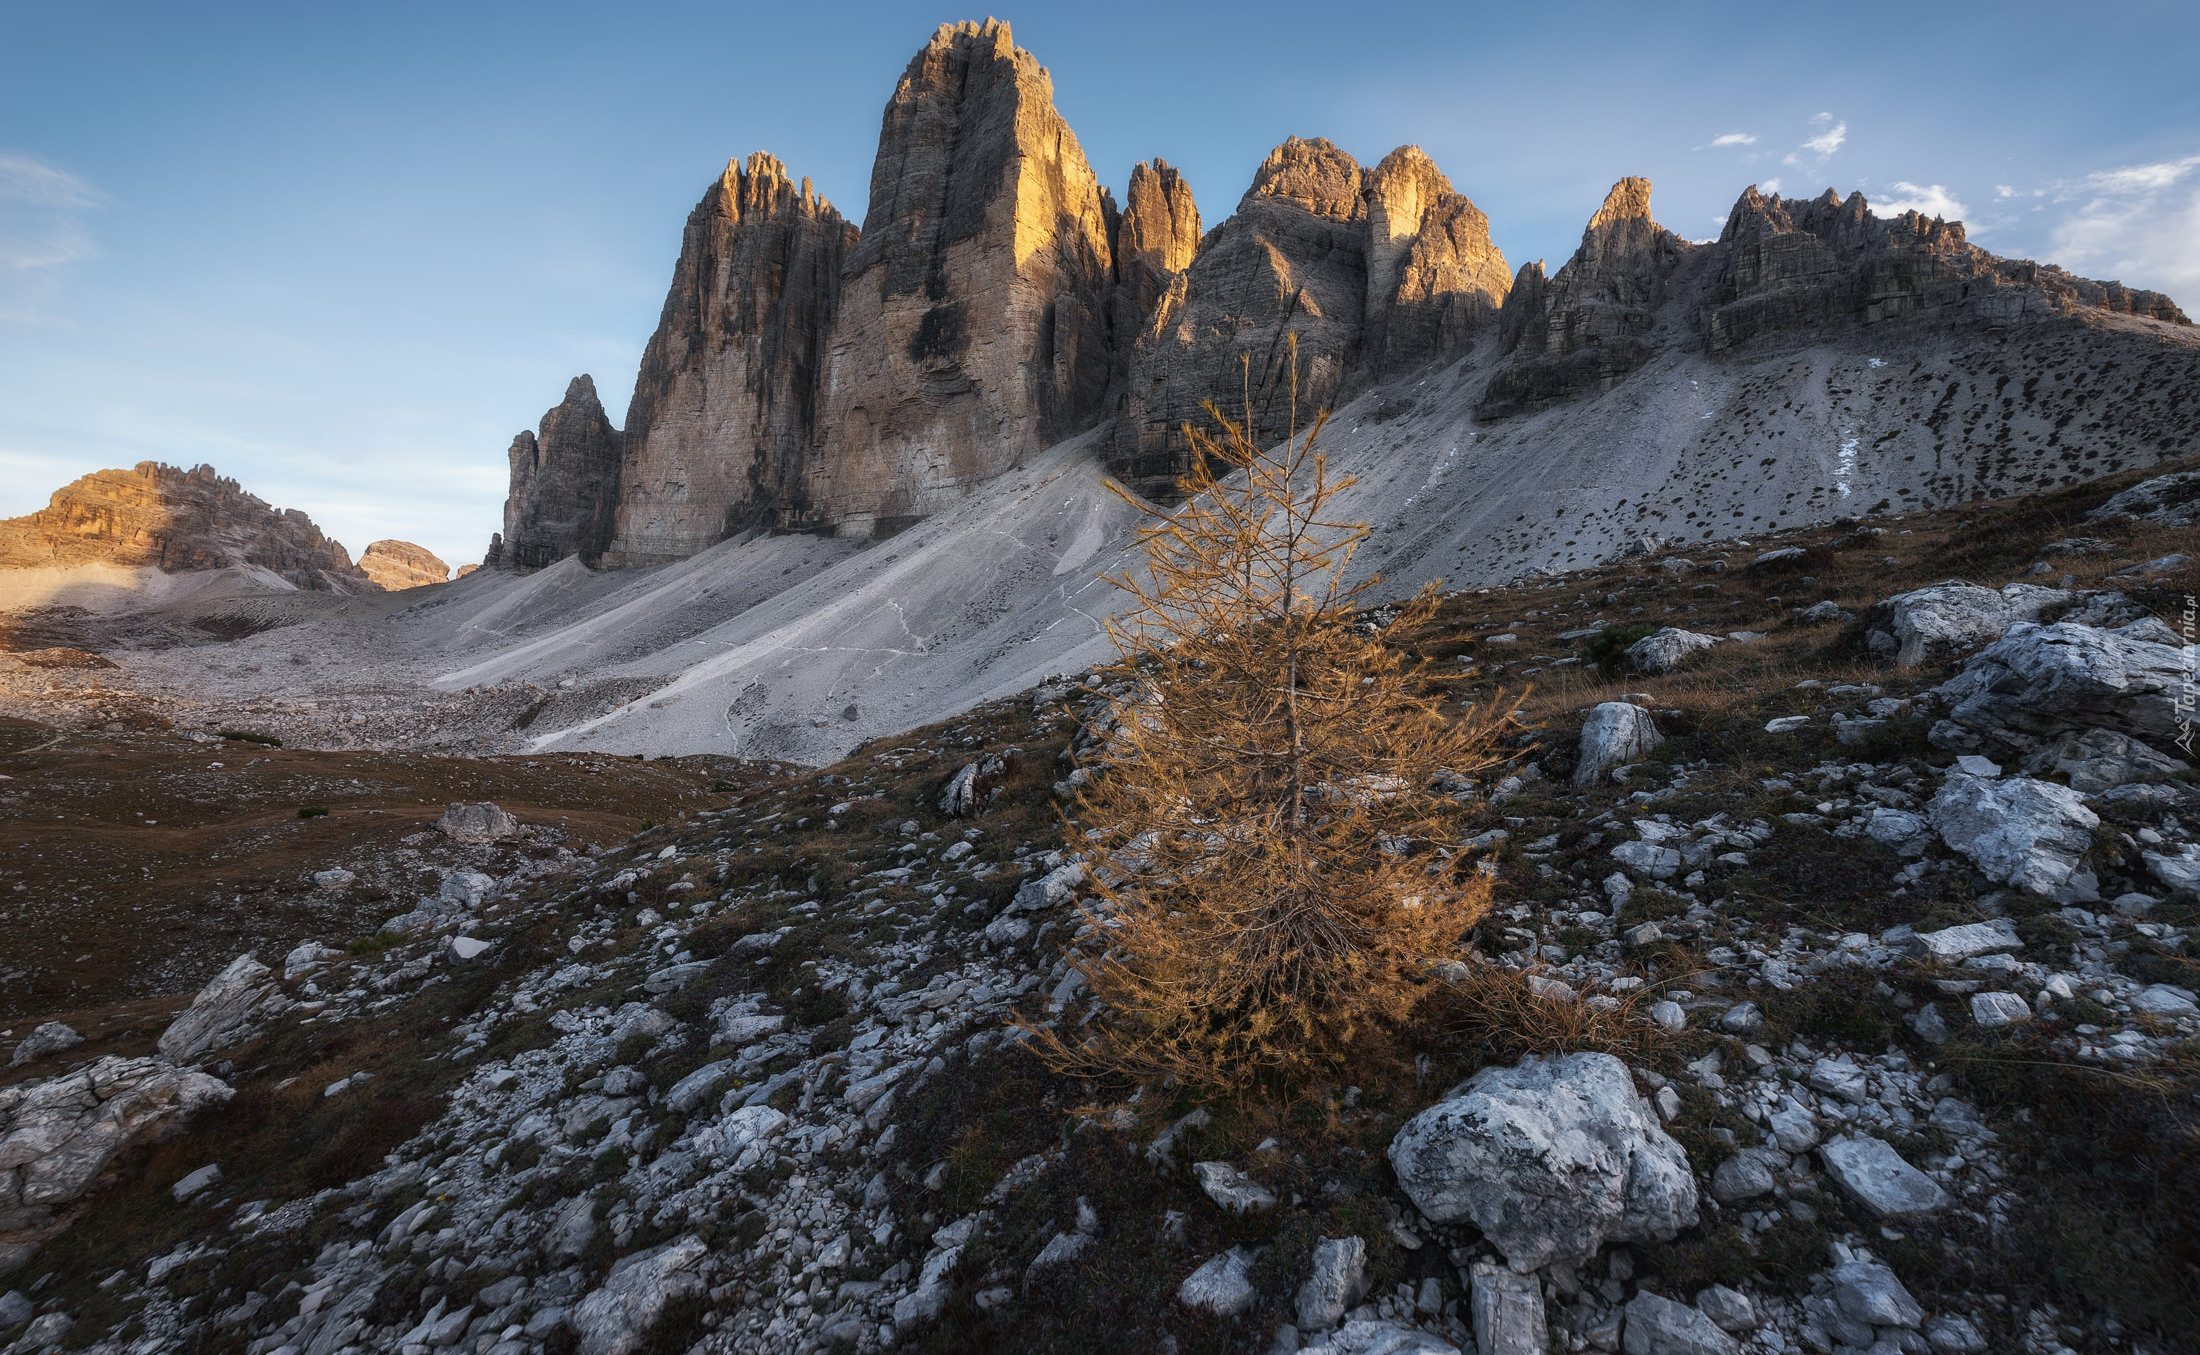 Drzewo, Kamienie, Góry, Tre Cime di Lavaredo, Dolomity, Włochy